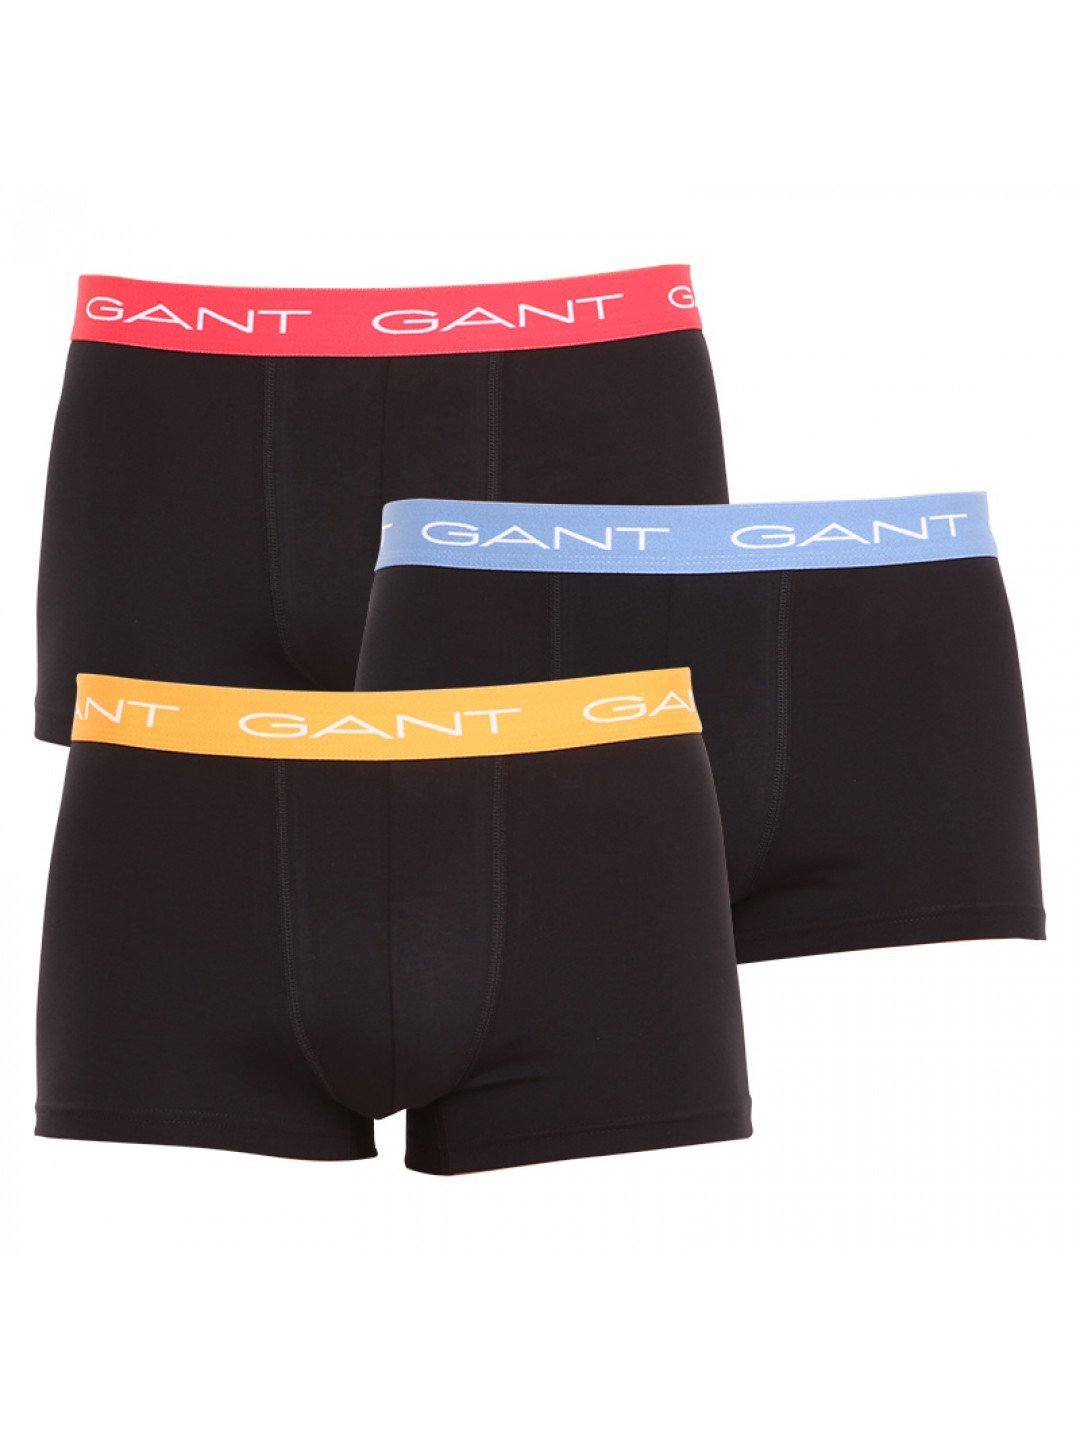 3PACK pánské boxerky Gant černé 902213003-005 M